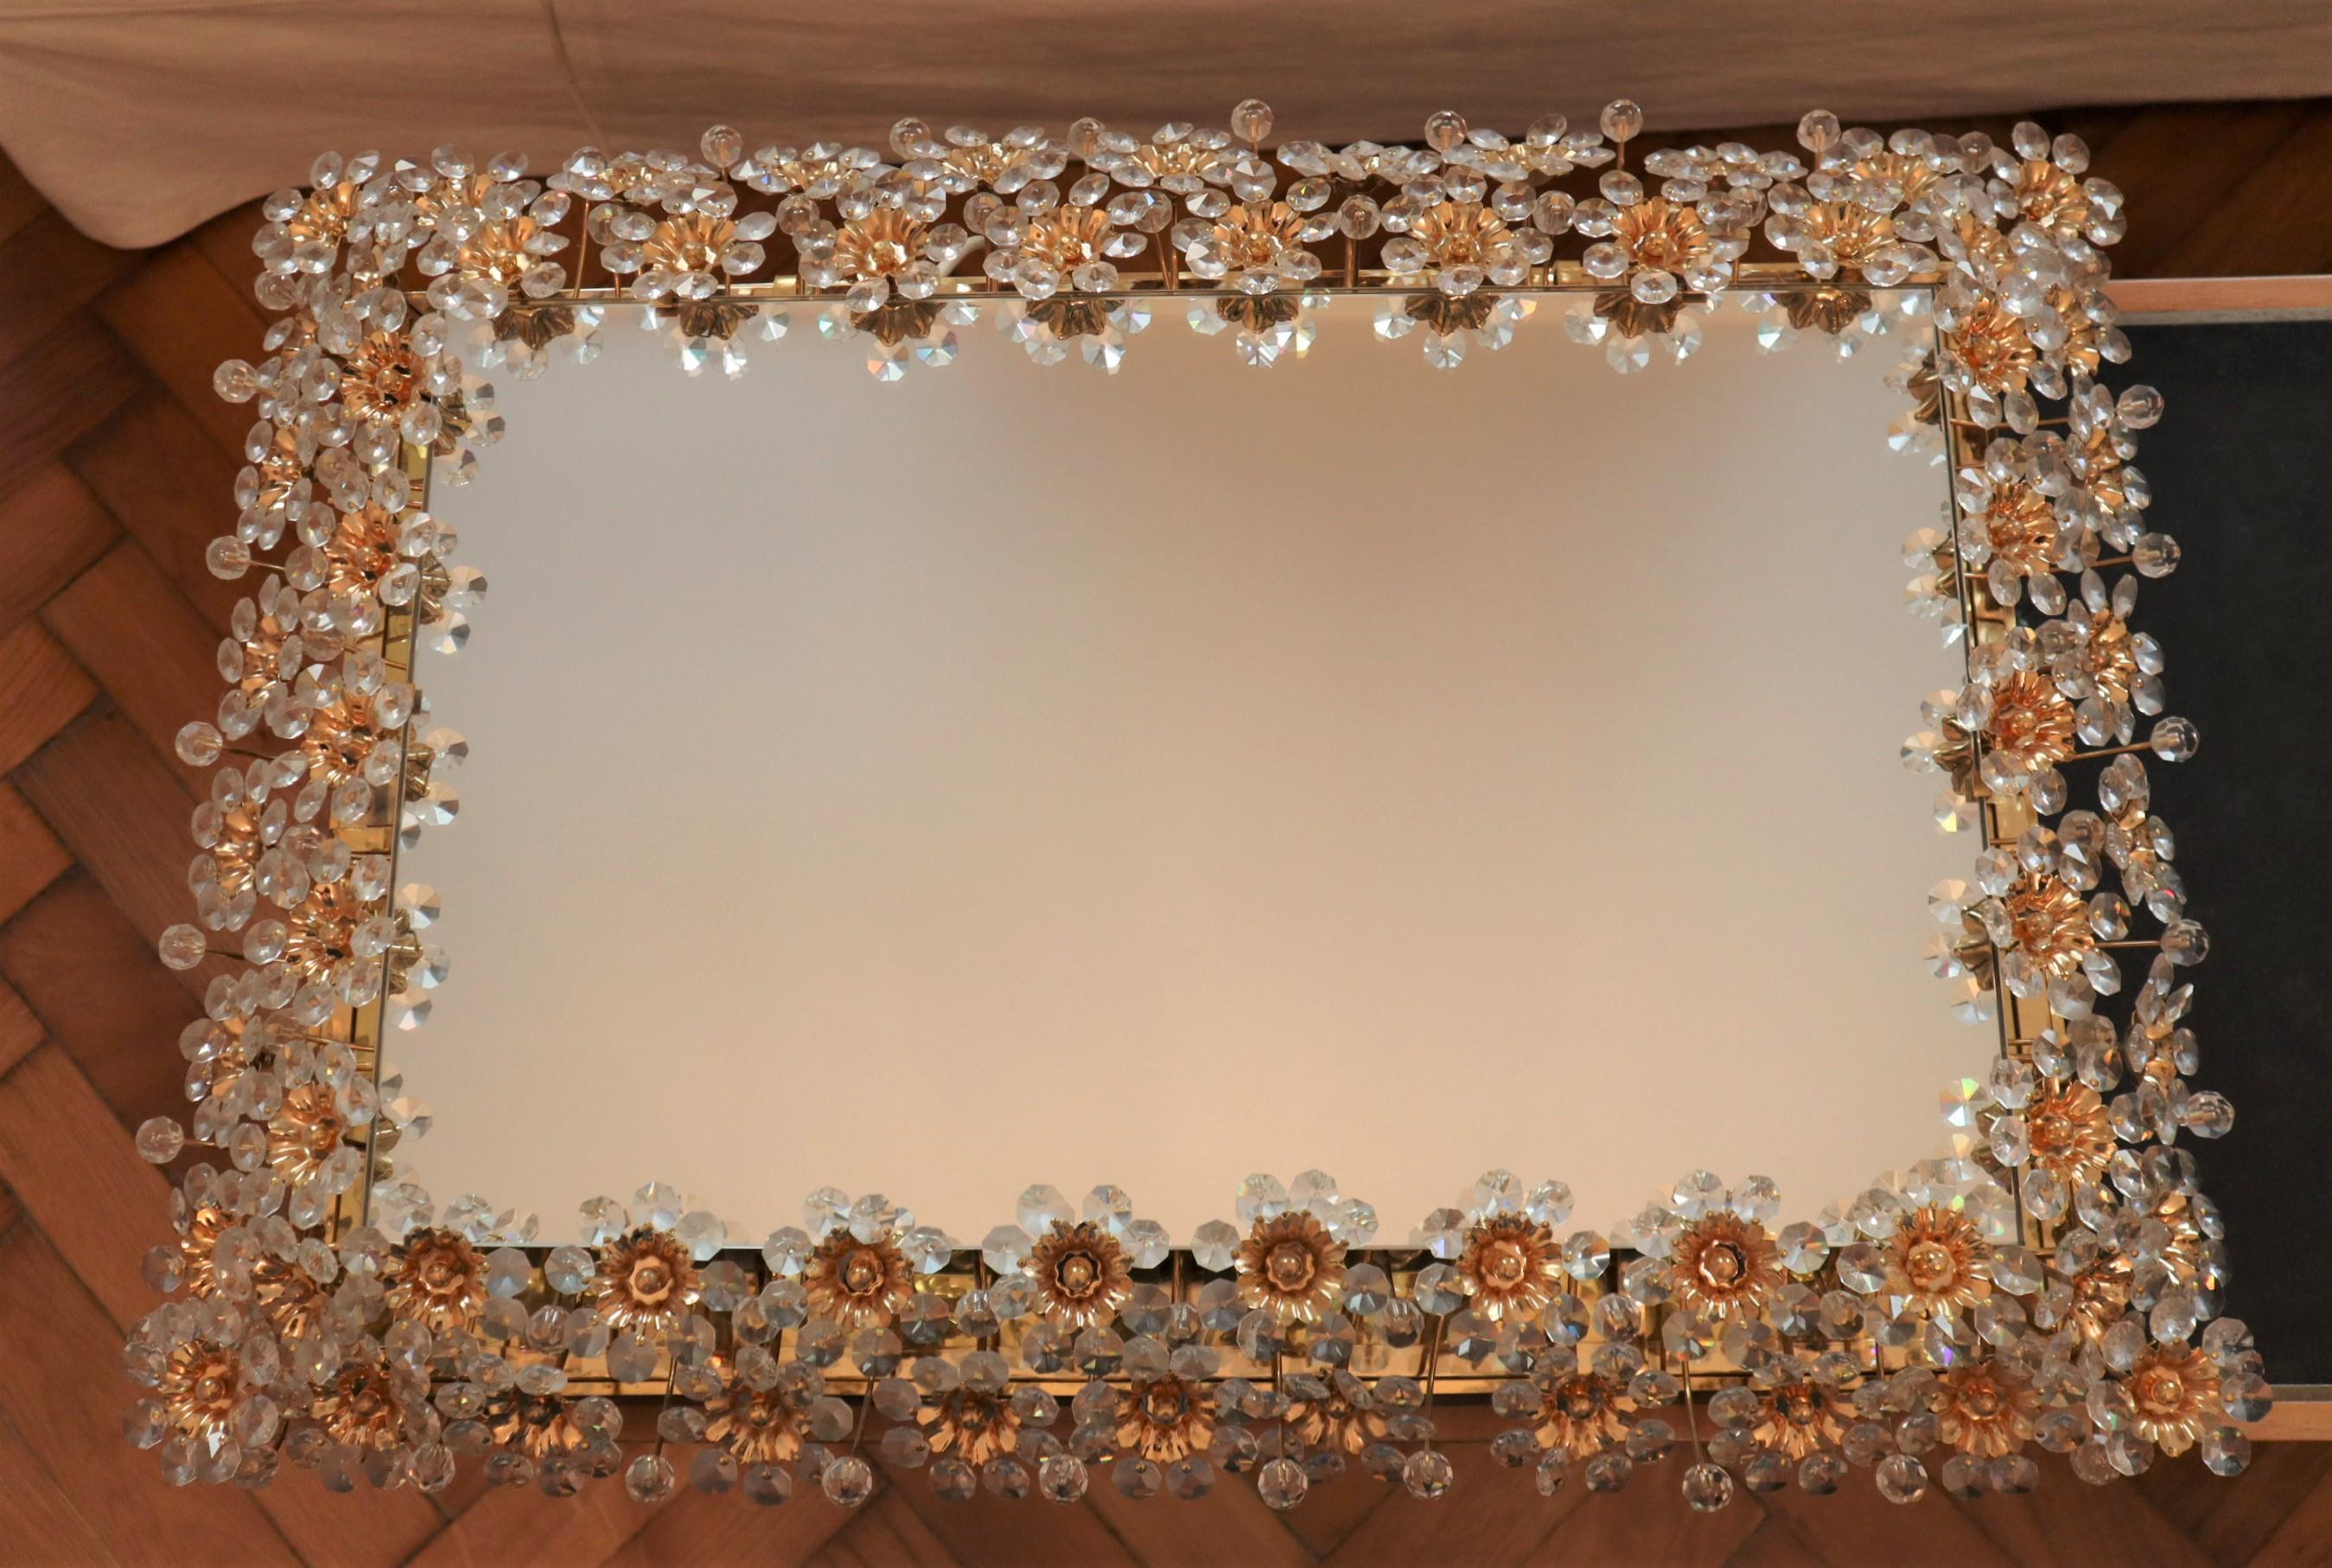 Beleuchteter rechteckiger Wandspiegel des deutschen Herstellers Palwa aus der Mitte des 20. Jahrhunderts.
Der Spiegel ist mit einer doppelten Bordüre aus zarten Blumen und Blütenblättern aus facettierten Kristallen und Perlen umrahmt, die im Licht